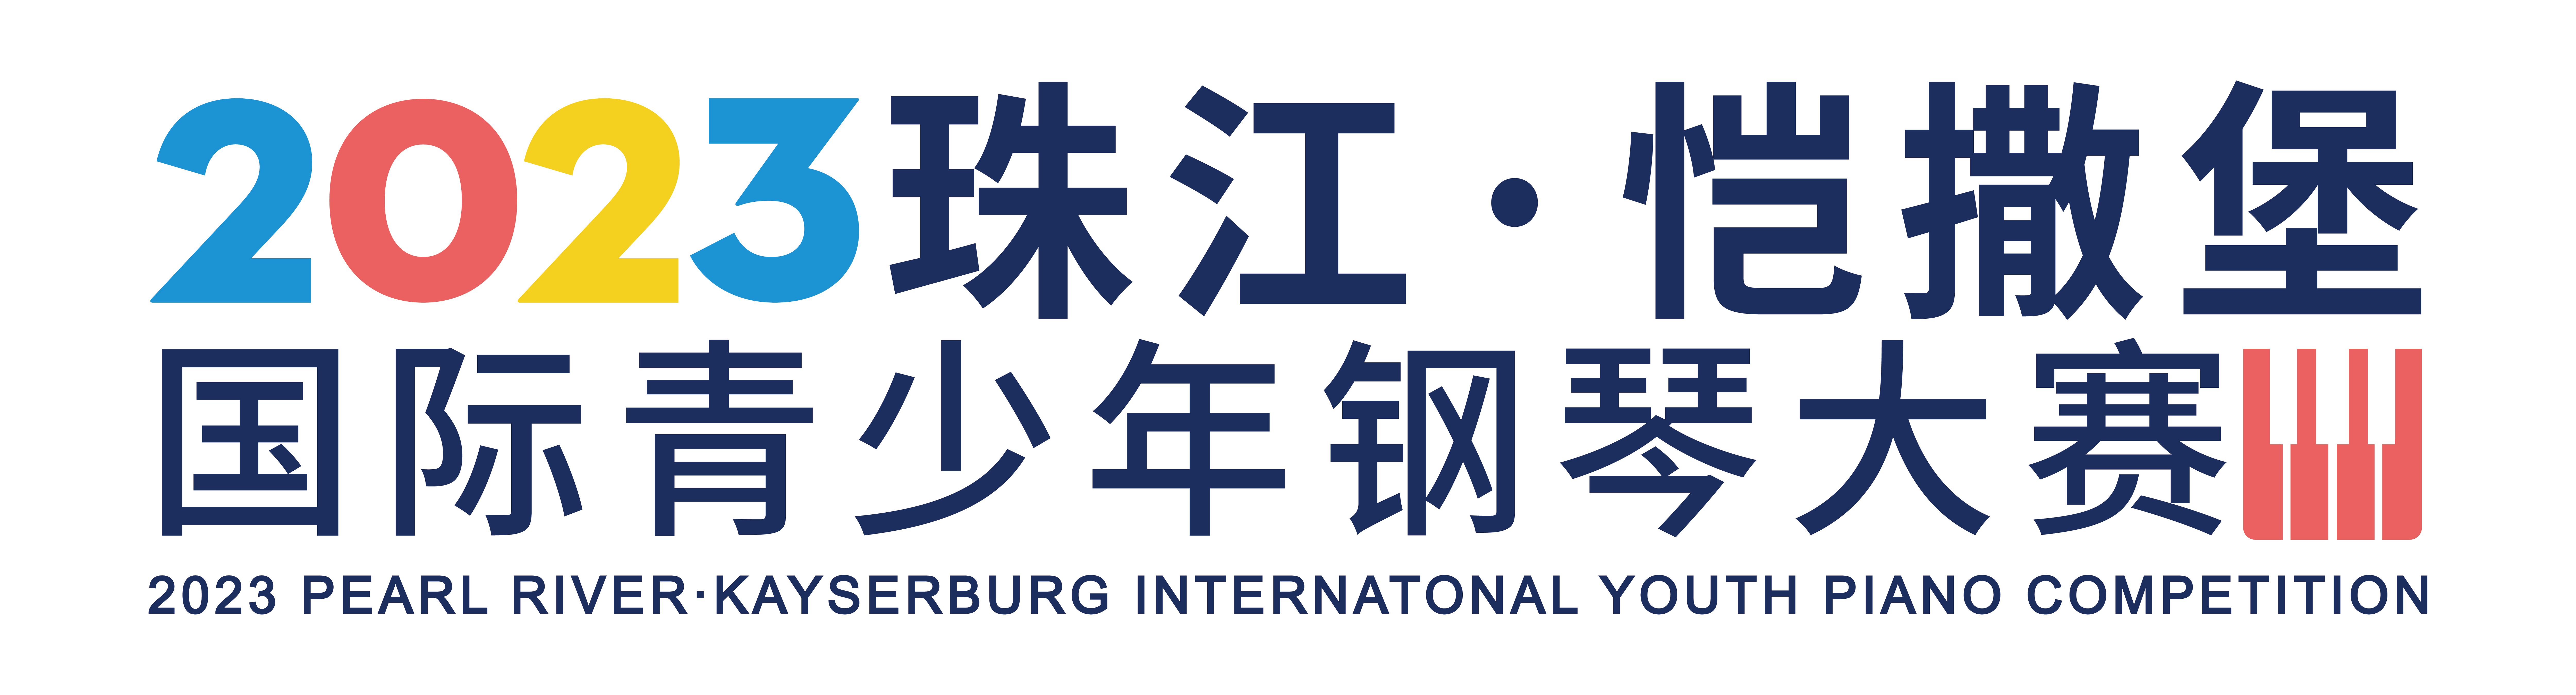 2023年“珠江·愷撒堡” 國際青少年鋼琴大賽呼和浩特市分賽區初賽時間及線下報名點通知